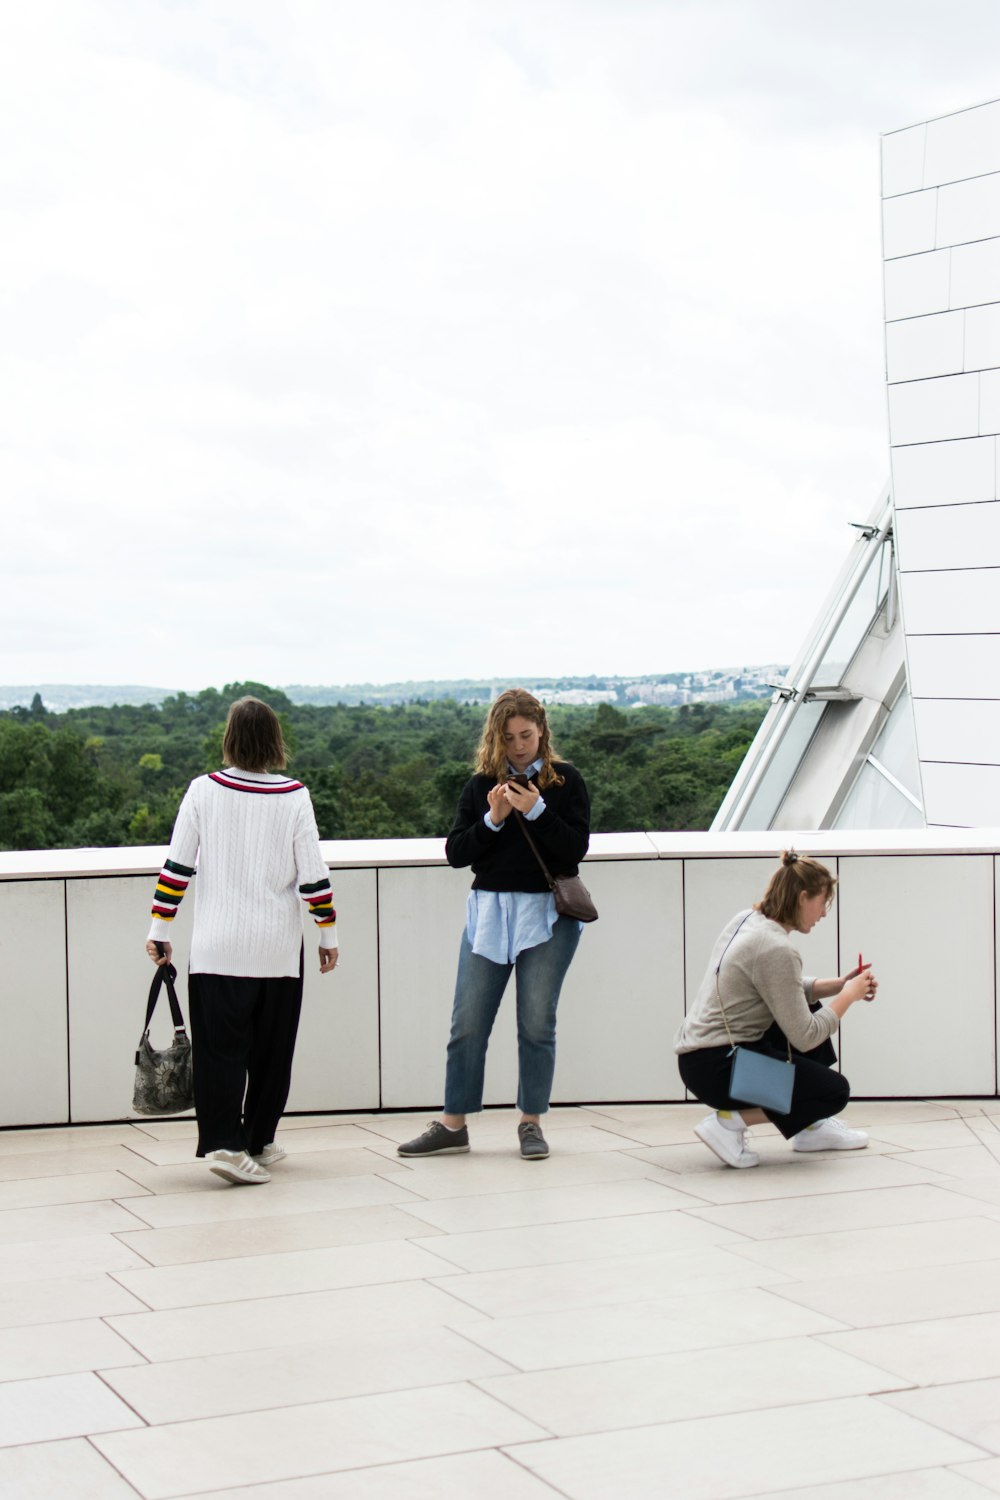 콘크리트 표면에 서서 앉아있는 세 명의 여성